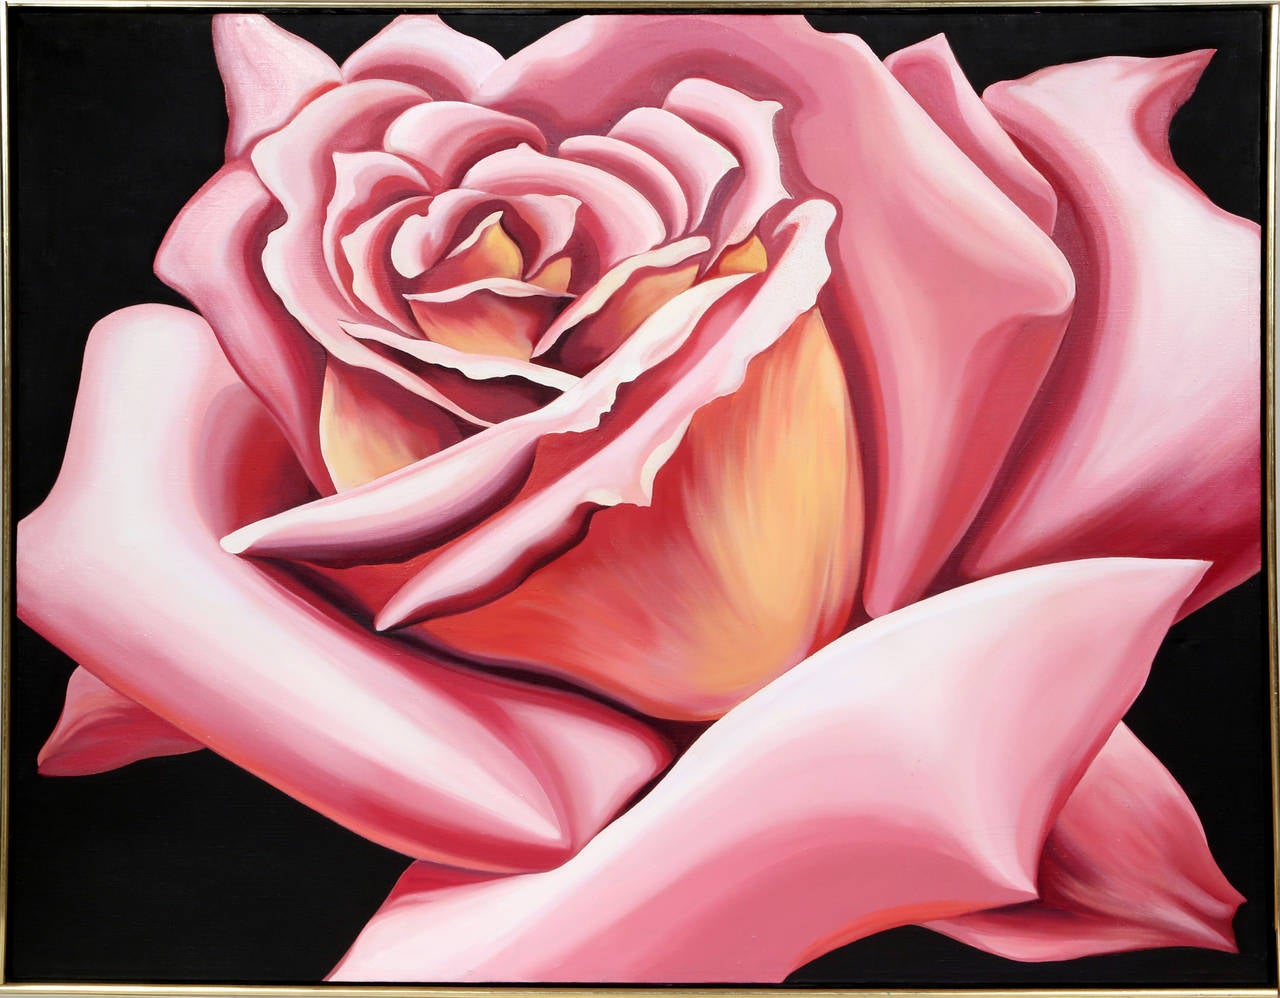 Realistisches Blumengemälde in Rosa Rose von Lowell Nesbitt, 1976